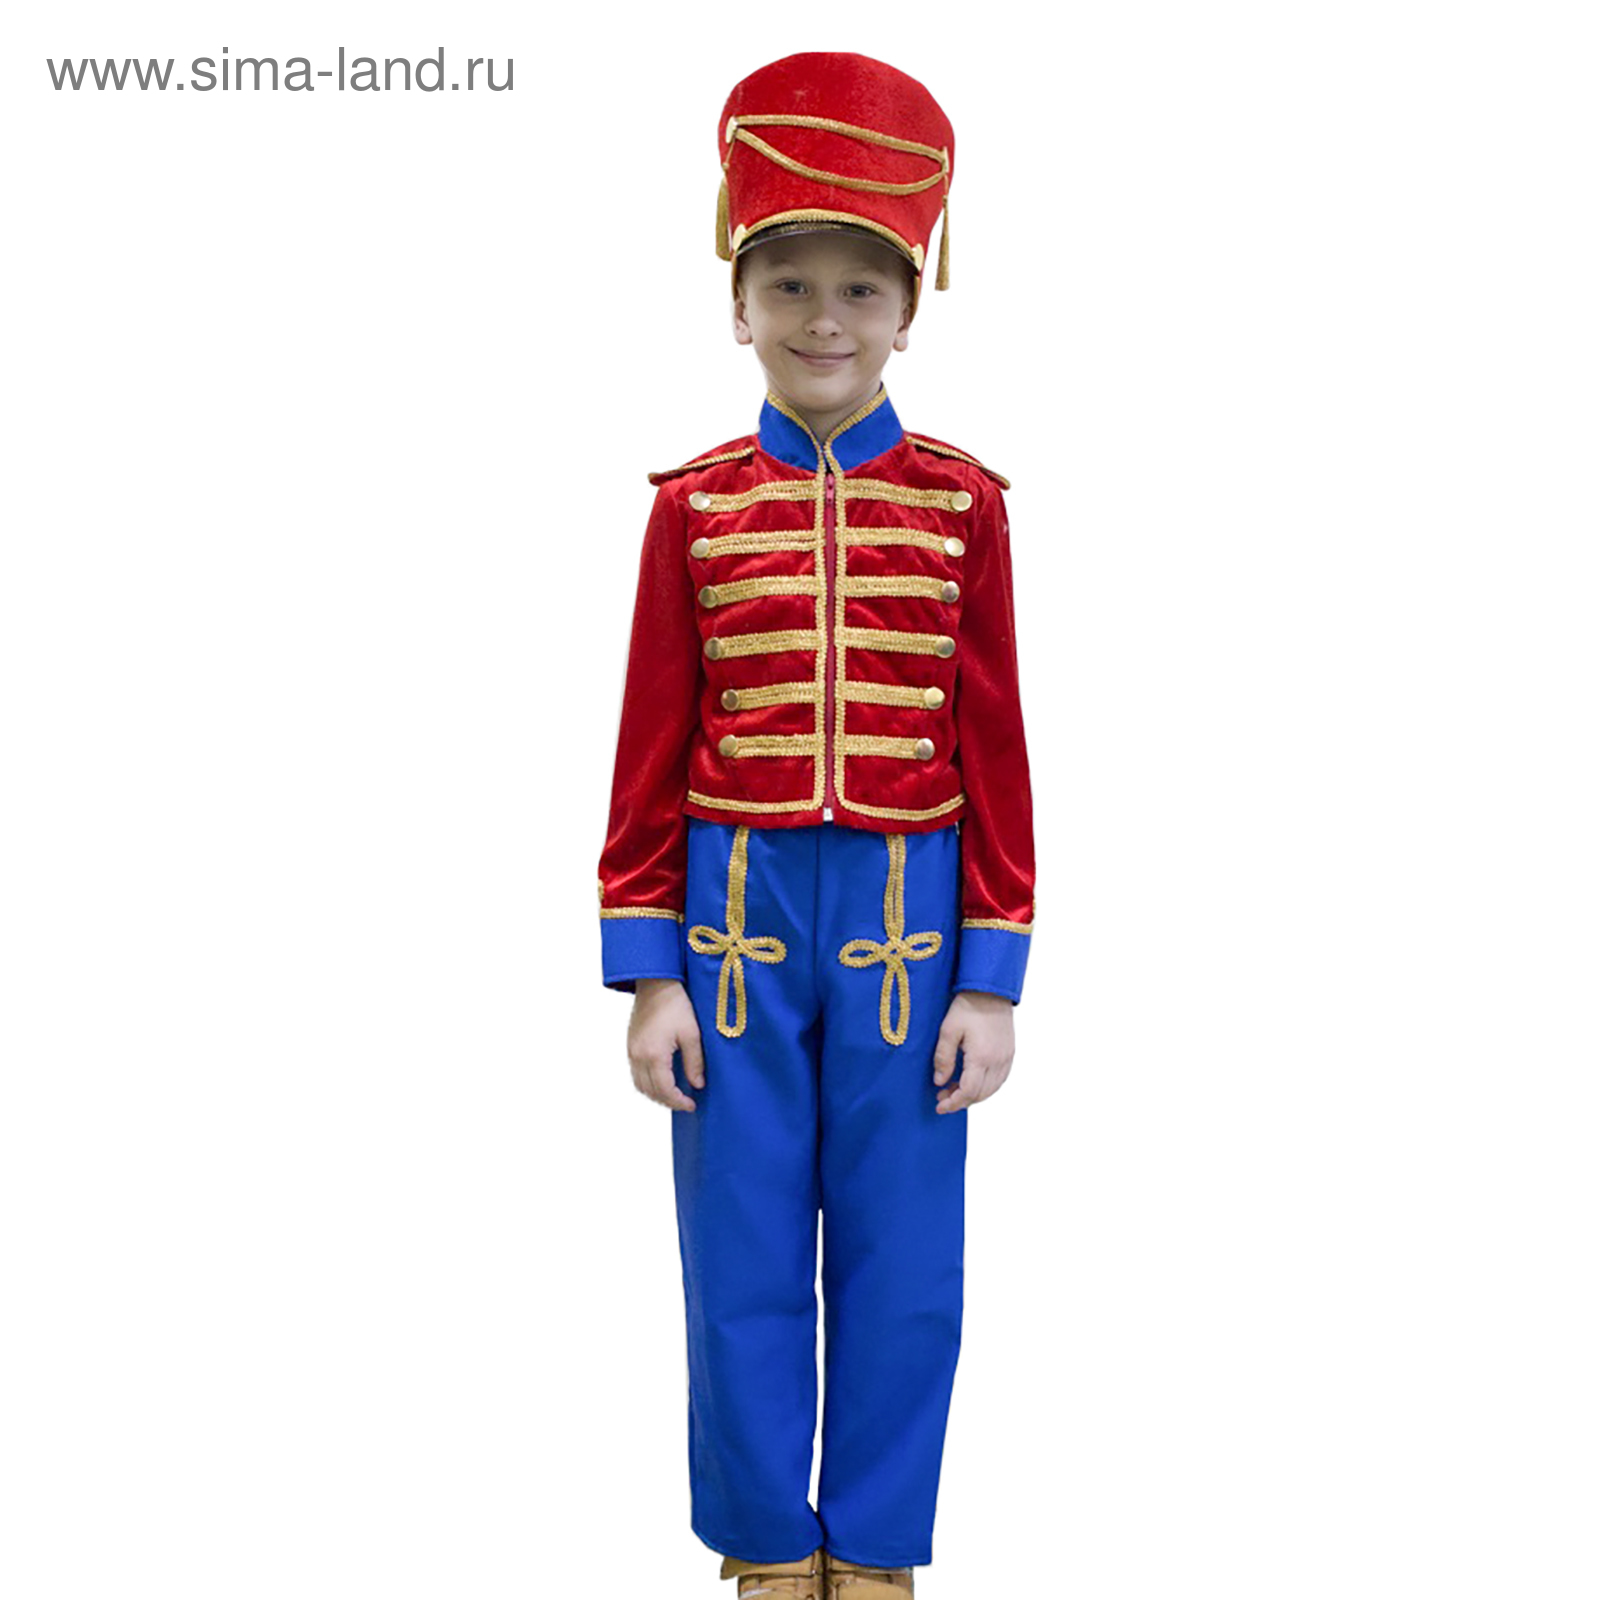 Карнавальный костюм Гусар, рост 110 см